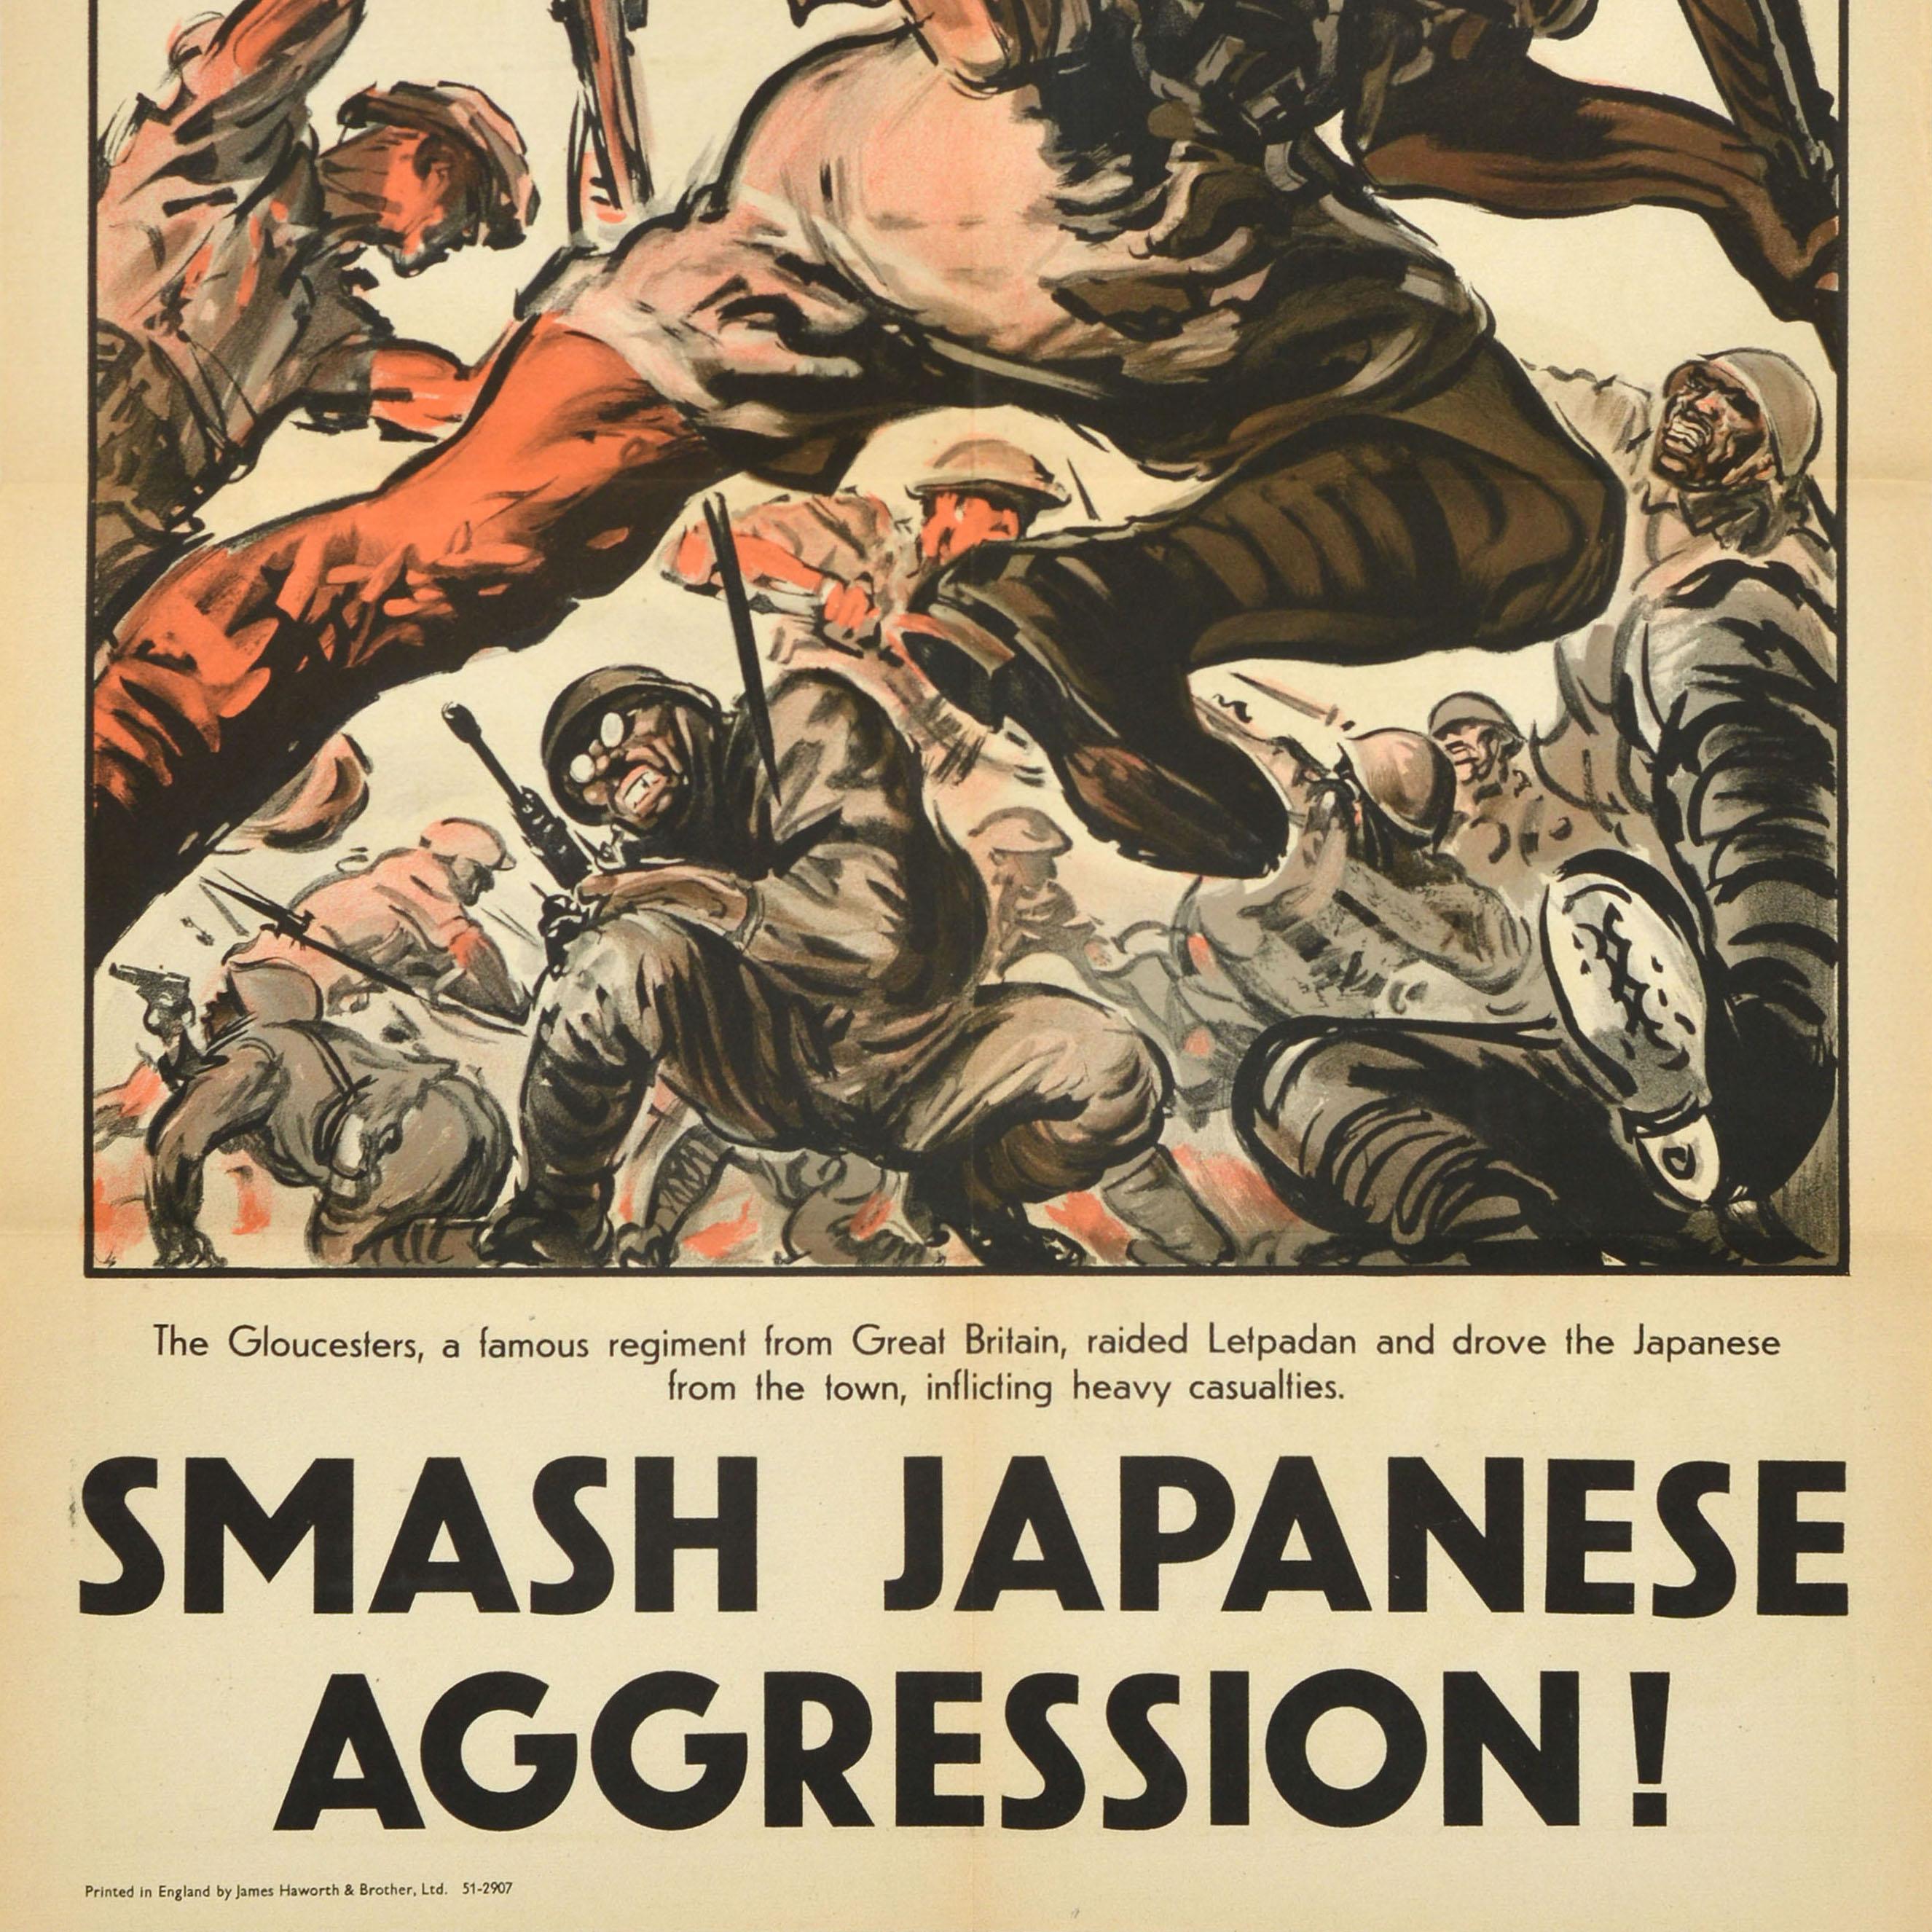 Originales Propagandaplakat aus dem Zweiten Weltkrieg - Die Gloucesters, ein berühmtes britisches Regiment, überfielen Letpadan und vertrieben die Japaner aus der Stadt, wobei sie schwere Verluste hinnehmen mussten. Zerschlagt die japanische